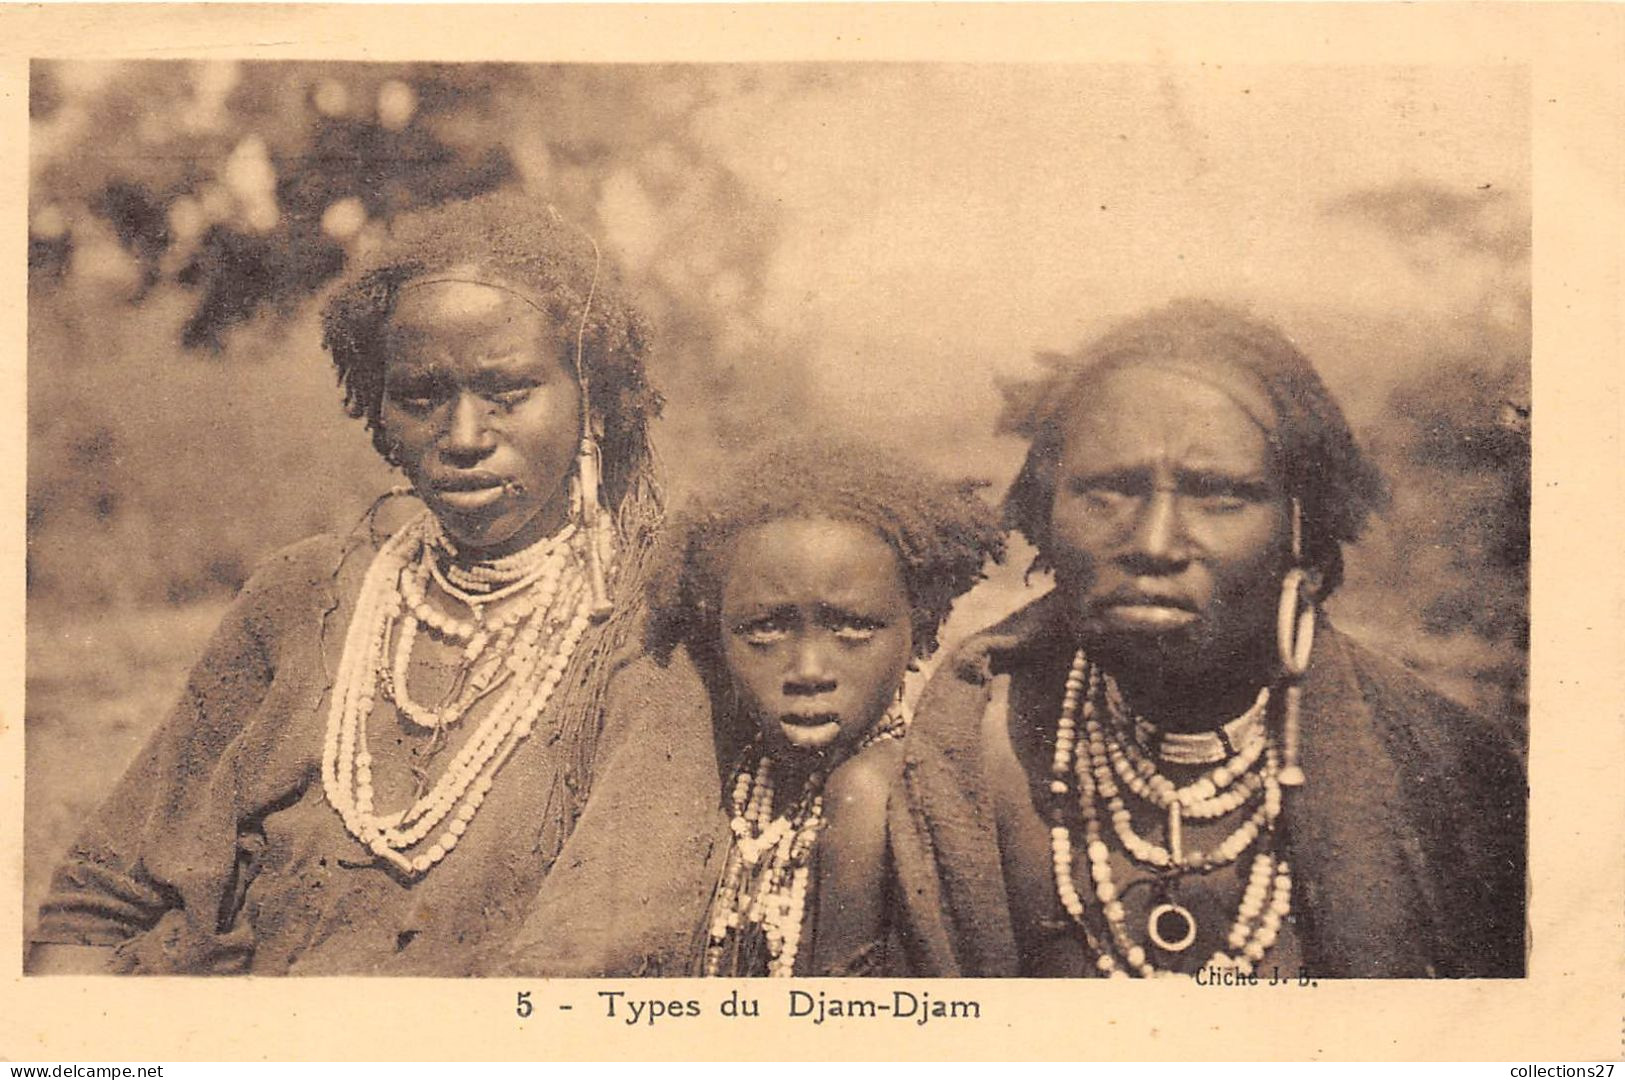 TYPES DU DJAM-DJAM - Ethiopia